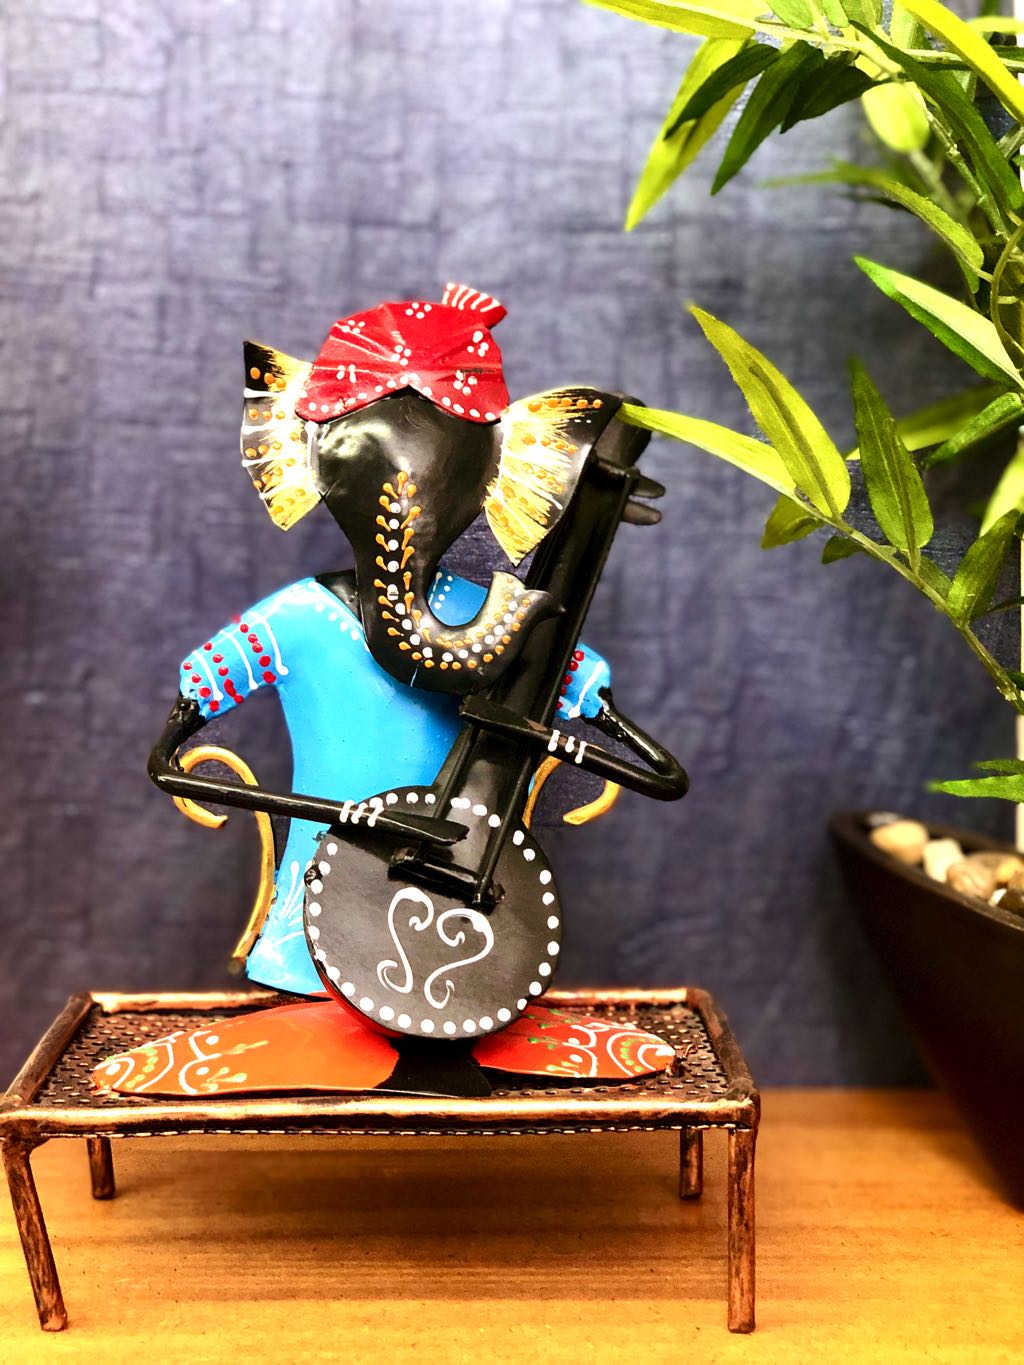 Lord Ganesha On Charpoy Playing Musical Instruments Tamrapatra - Tamrapatra